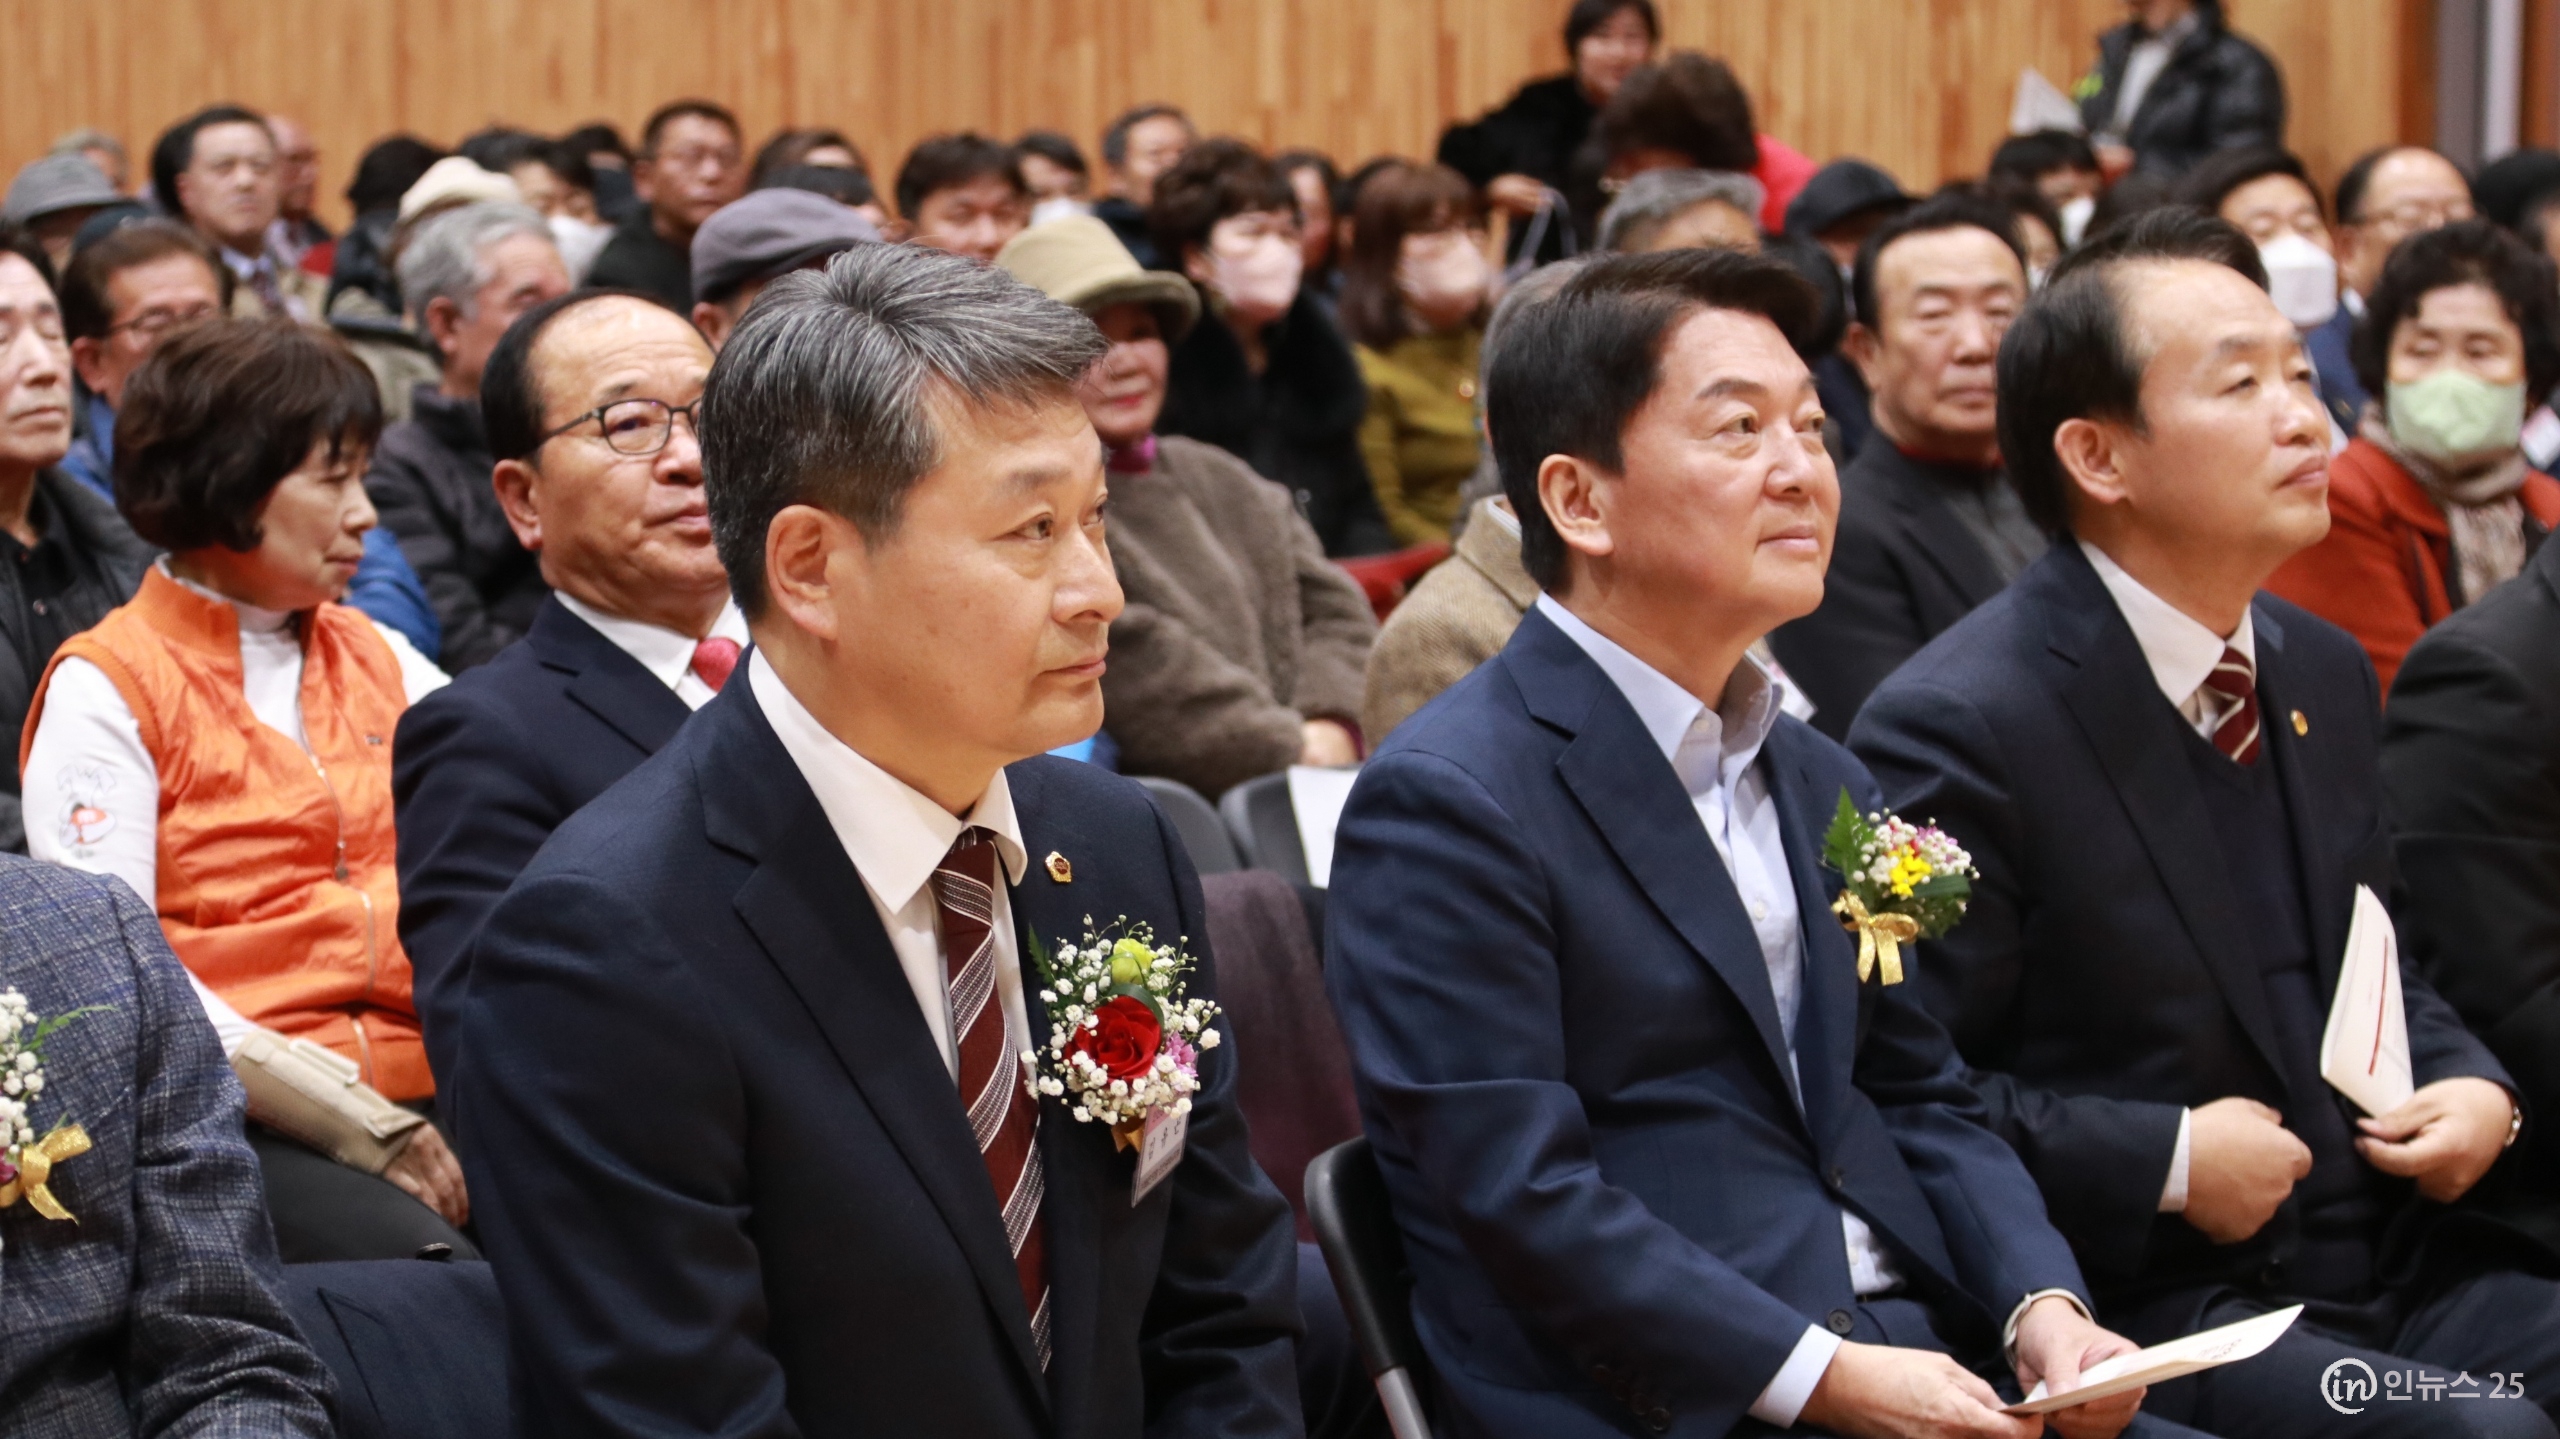 인천시의회 김유곤 의원, 안철수 의원 초청 특별 강연회 주재